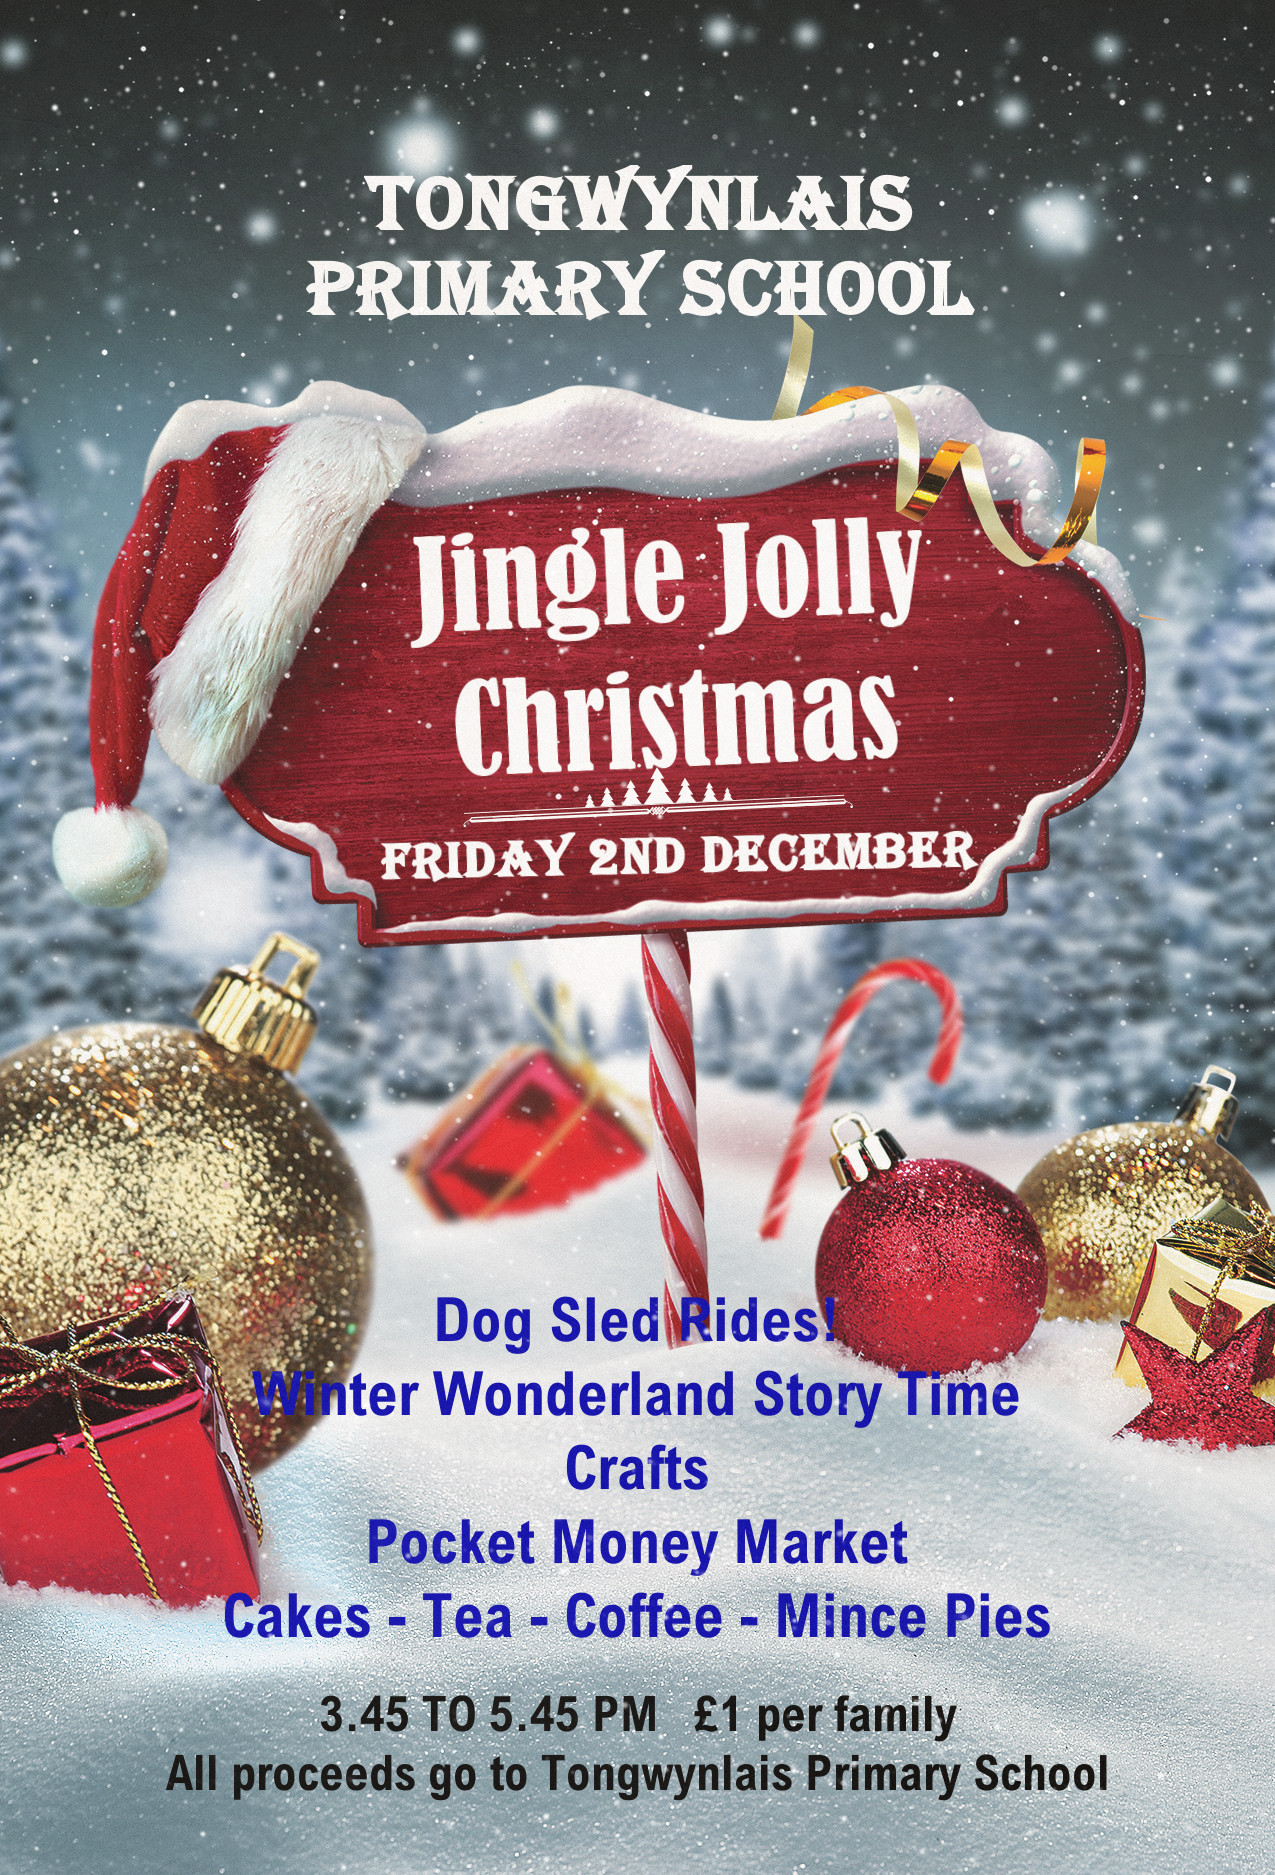 Jingle Jolly Christmas poster